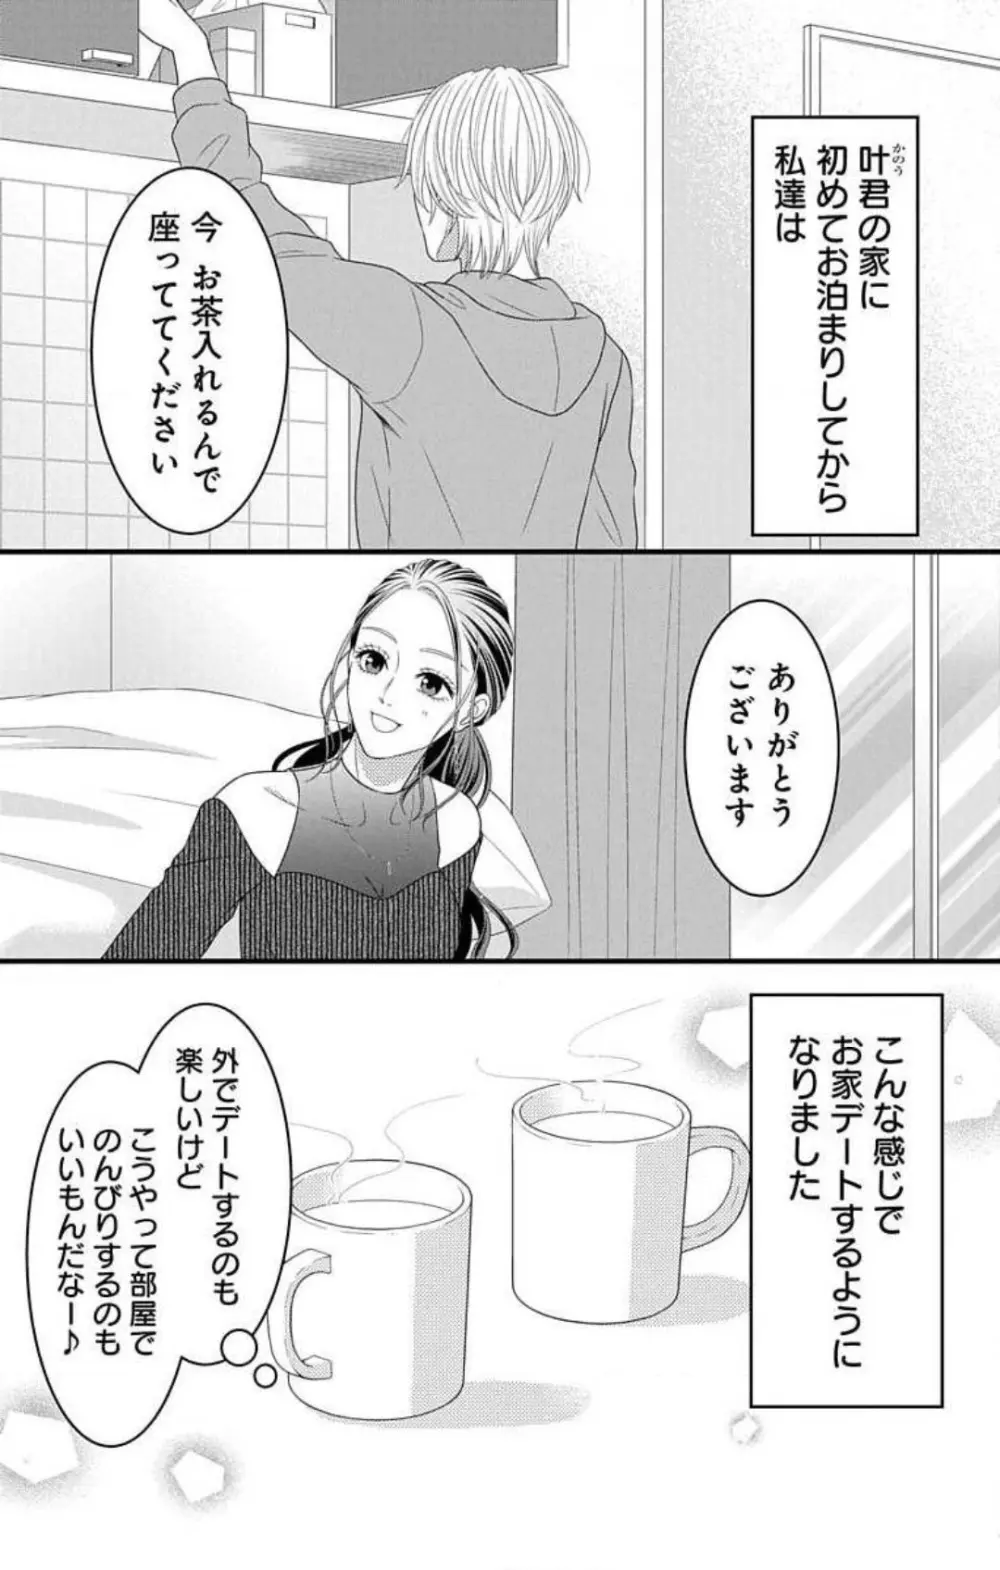 妄想ショウジョ21-27 37ページ